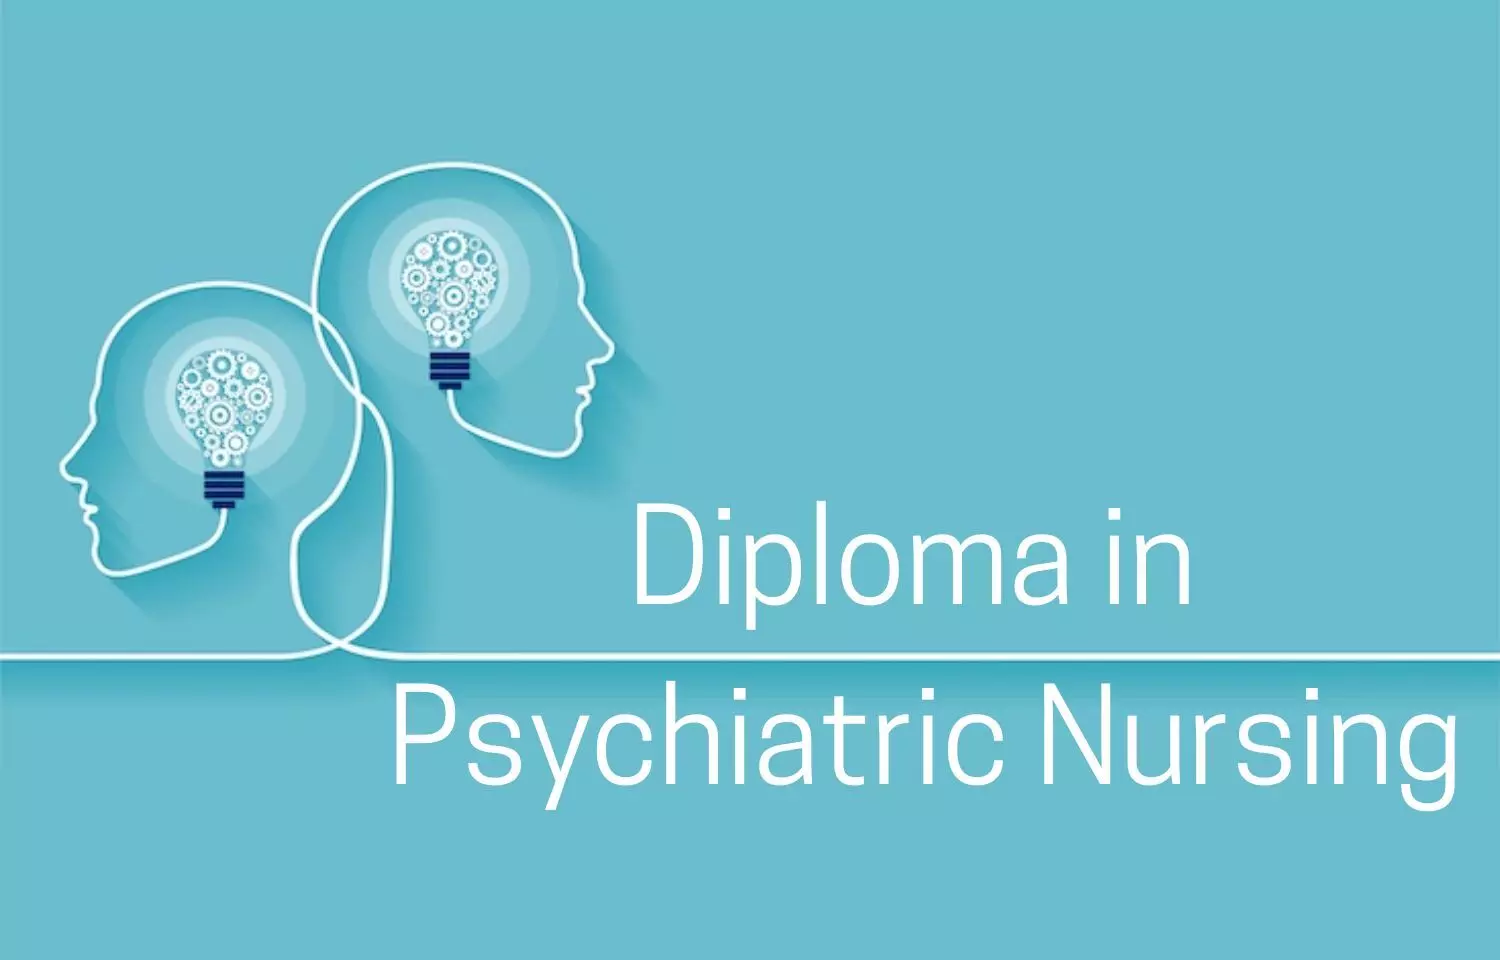 DME Chhattisgarh Invites Online Application For Diploma in Psychiatric Nursing For 2022, details